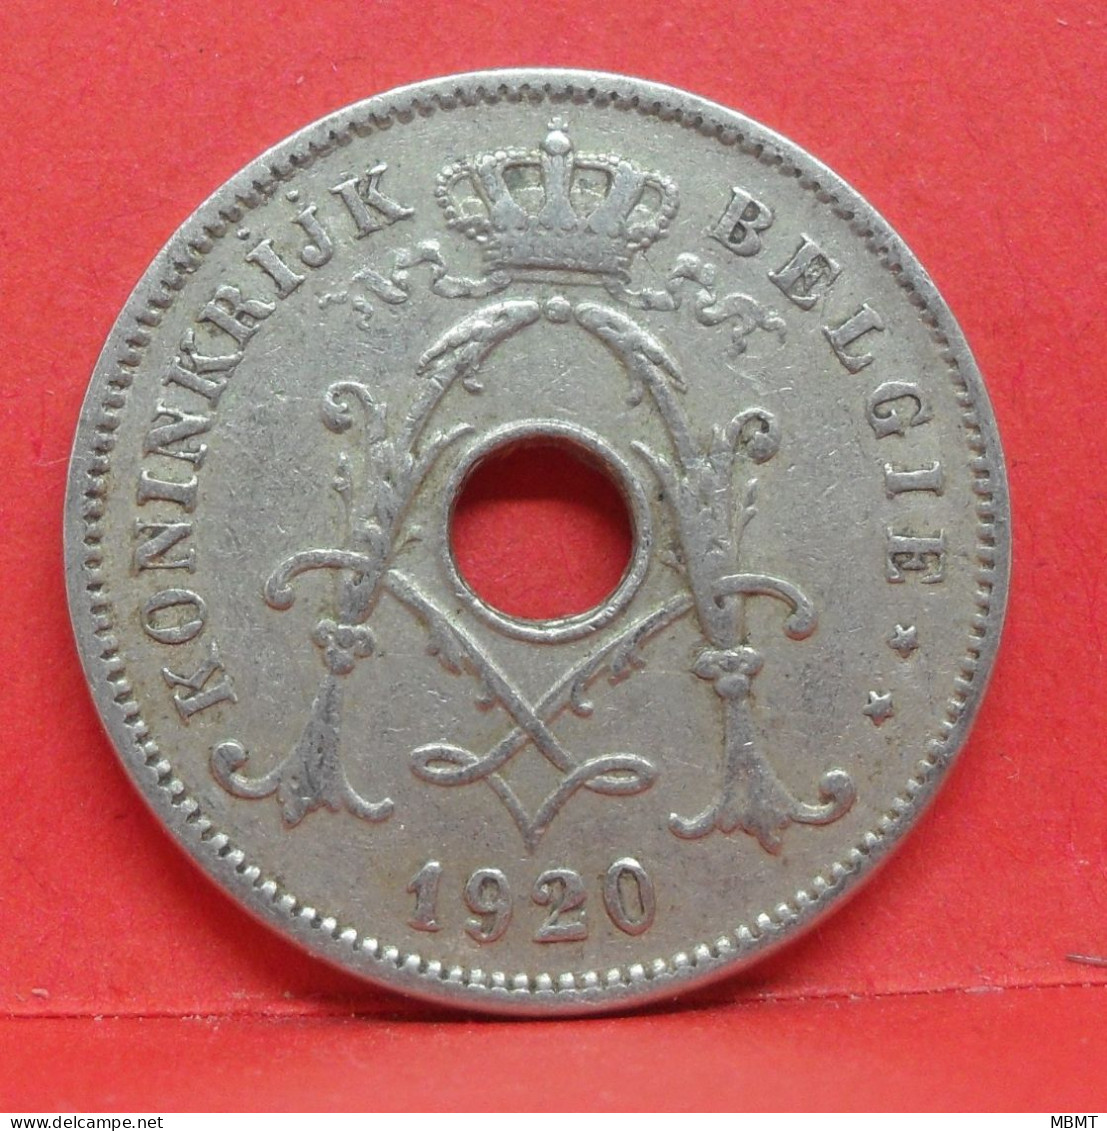 10 Centimes 1920 - TB - Pièce Monnaie Belgie - Article N°1859 - 10 Cent